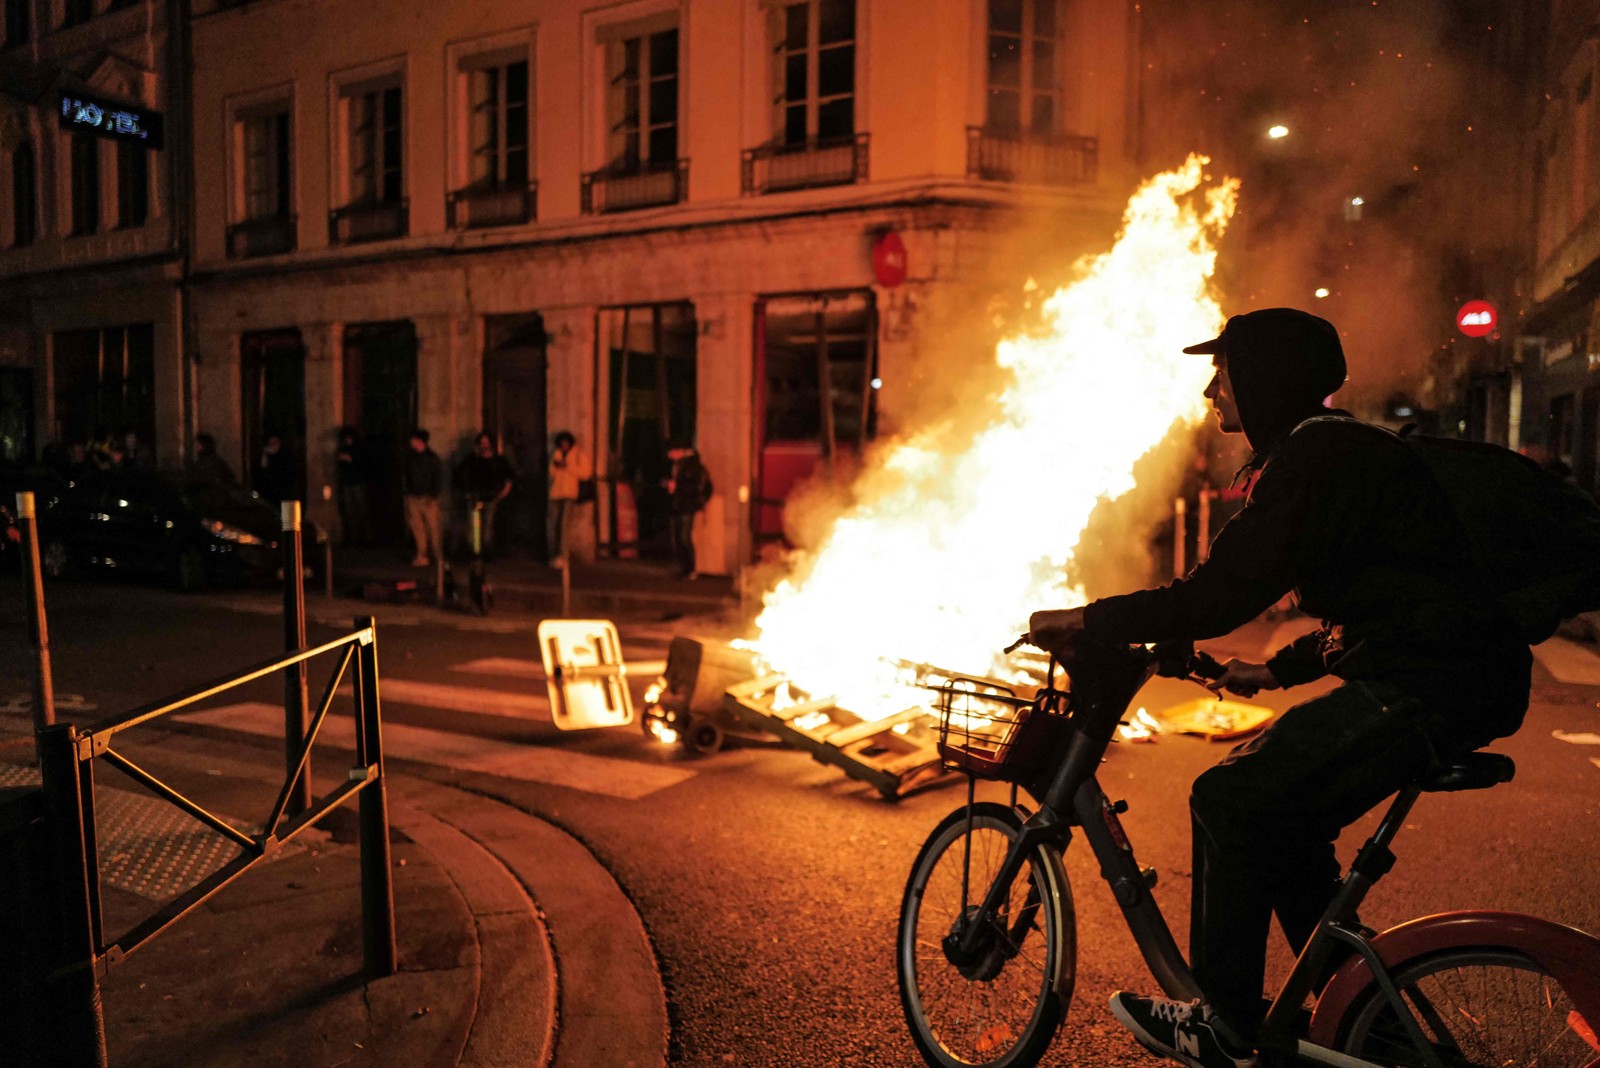 Ciclista passa por barricada em chamas durante uma manifestação em Lyon. — Foto: OLIVIER CHASSIGNOLE / AFP